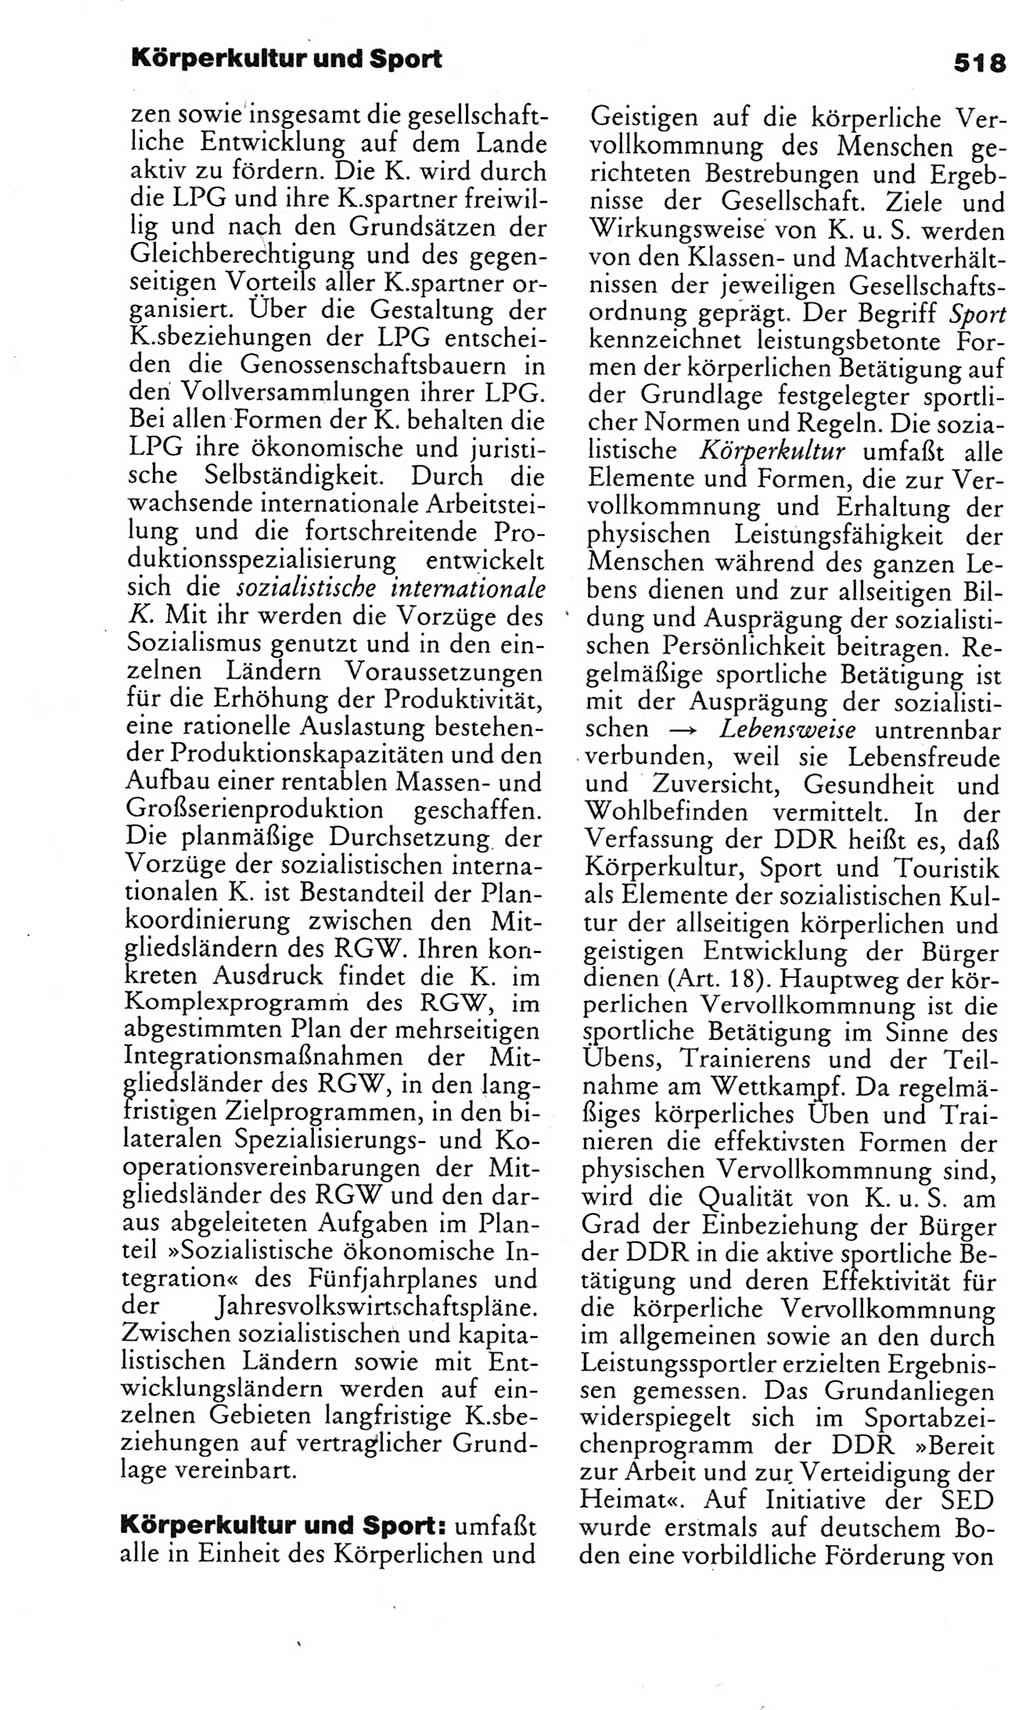 Kleines politisches Wörterbuch [Deutsche Demokratische Republik (DDR)] 1983, Seite 518 (Kl. pol. Wb. DDR 1983, S. 518)